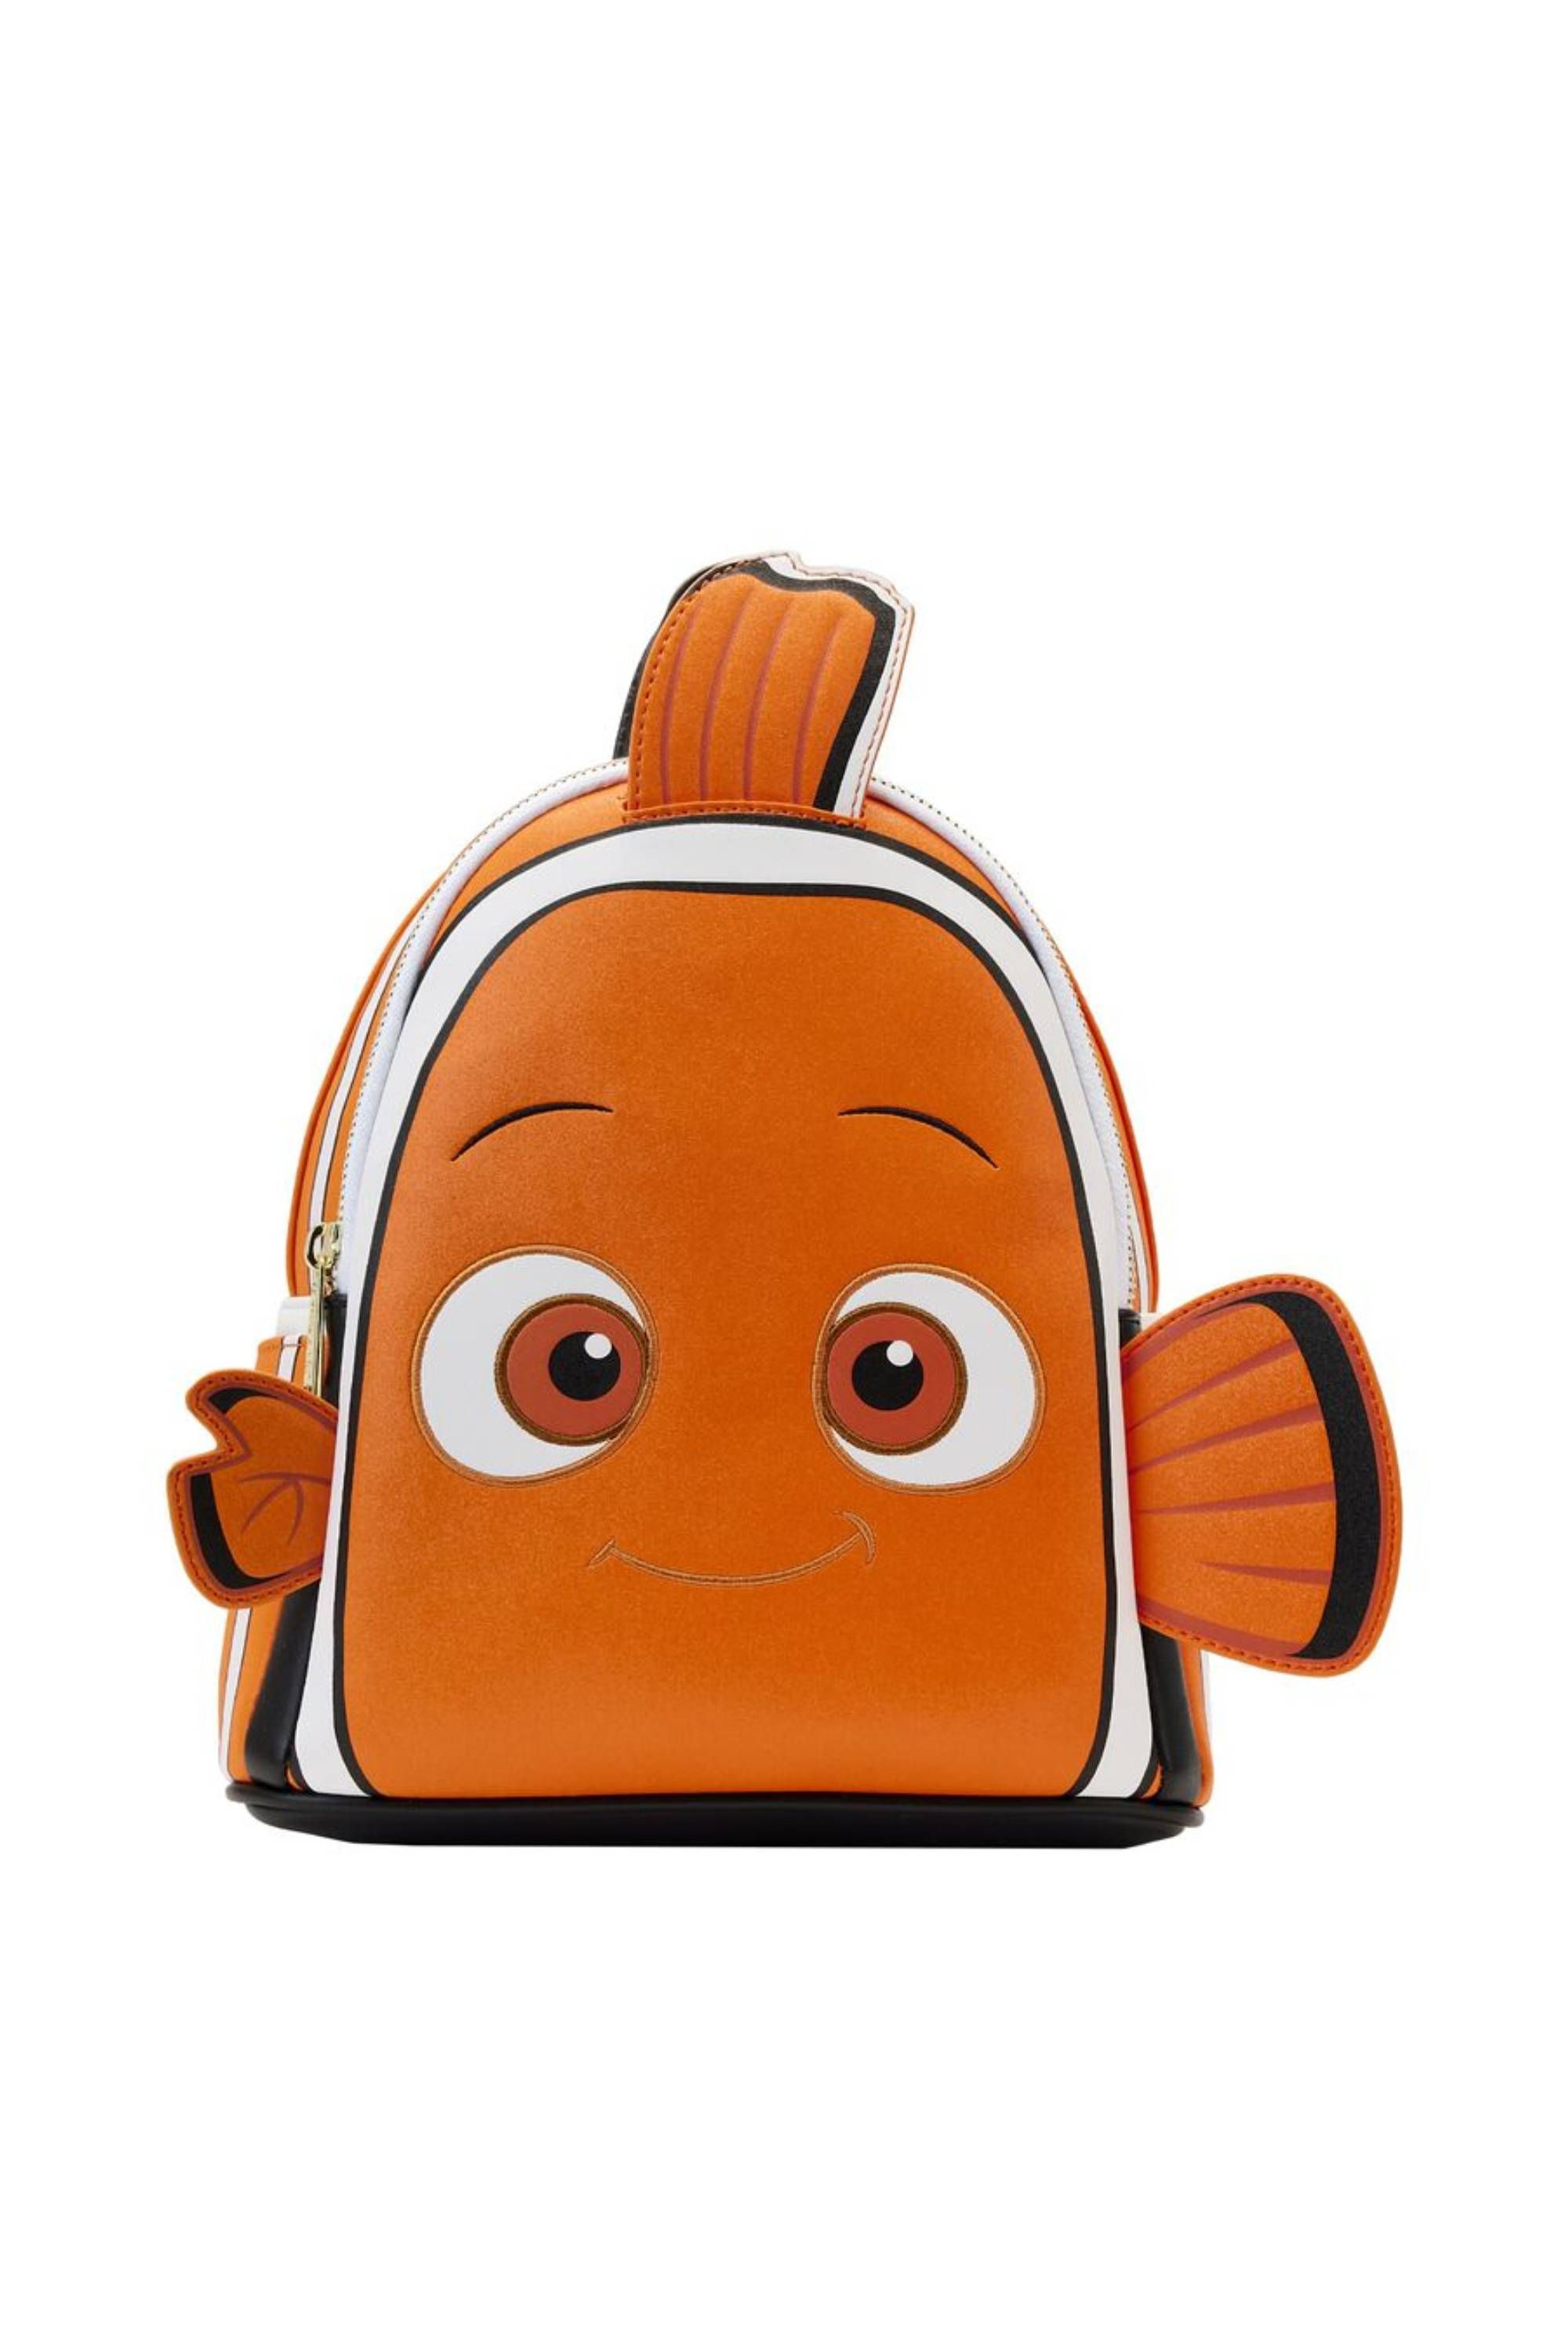 Finding Nemo 20th Anniversary Nemo Cosplay Mini Backpack